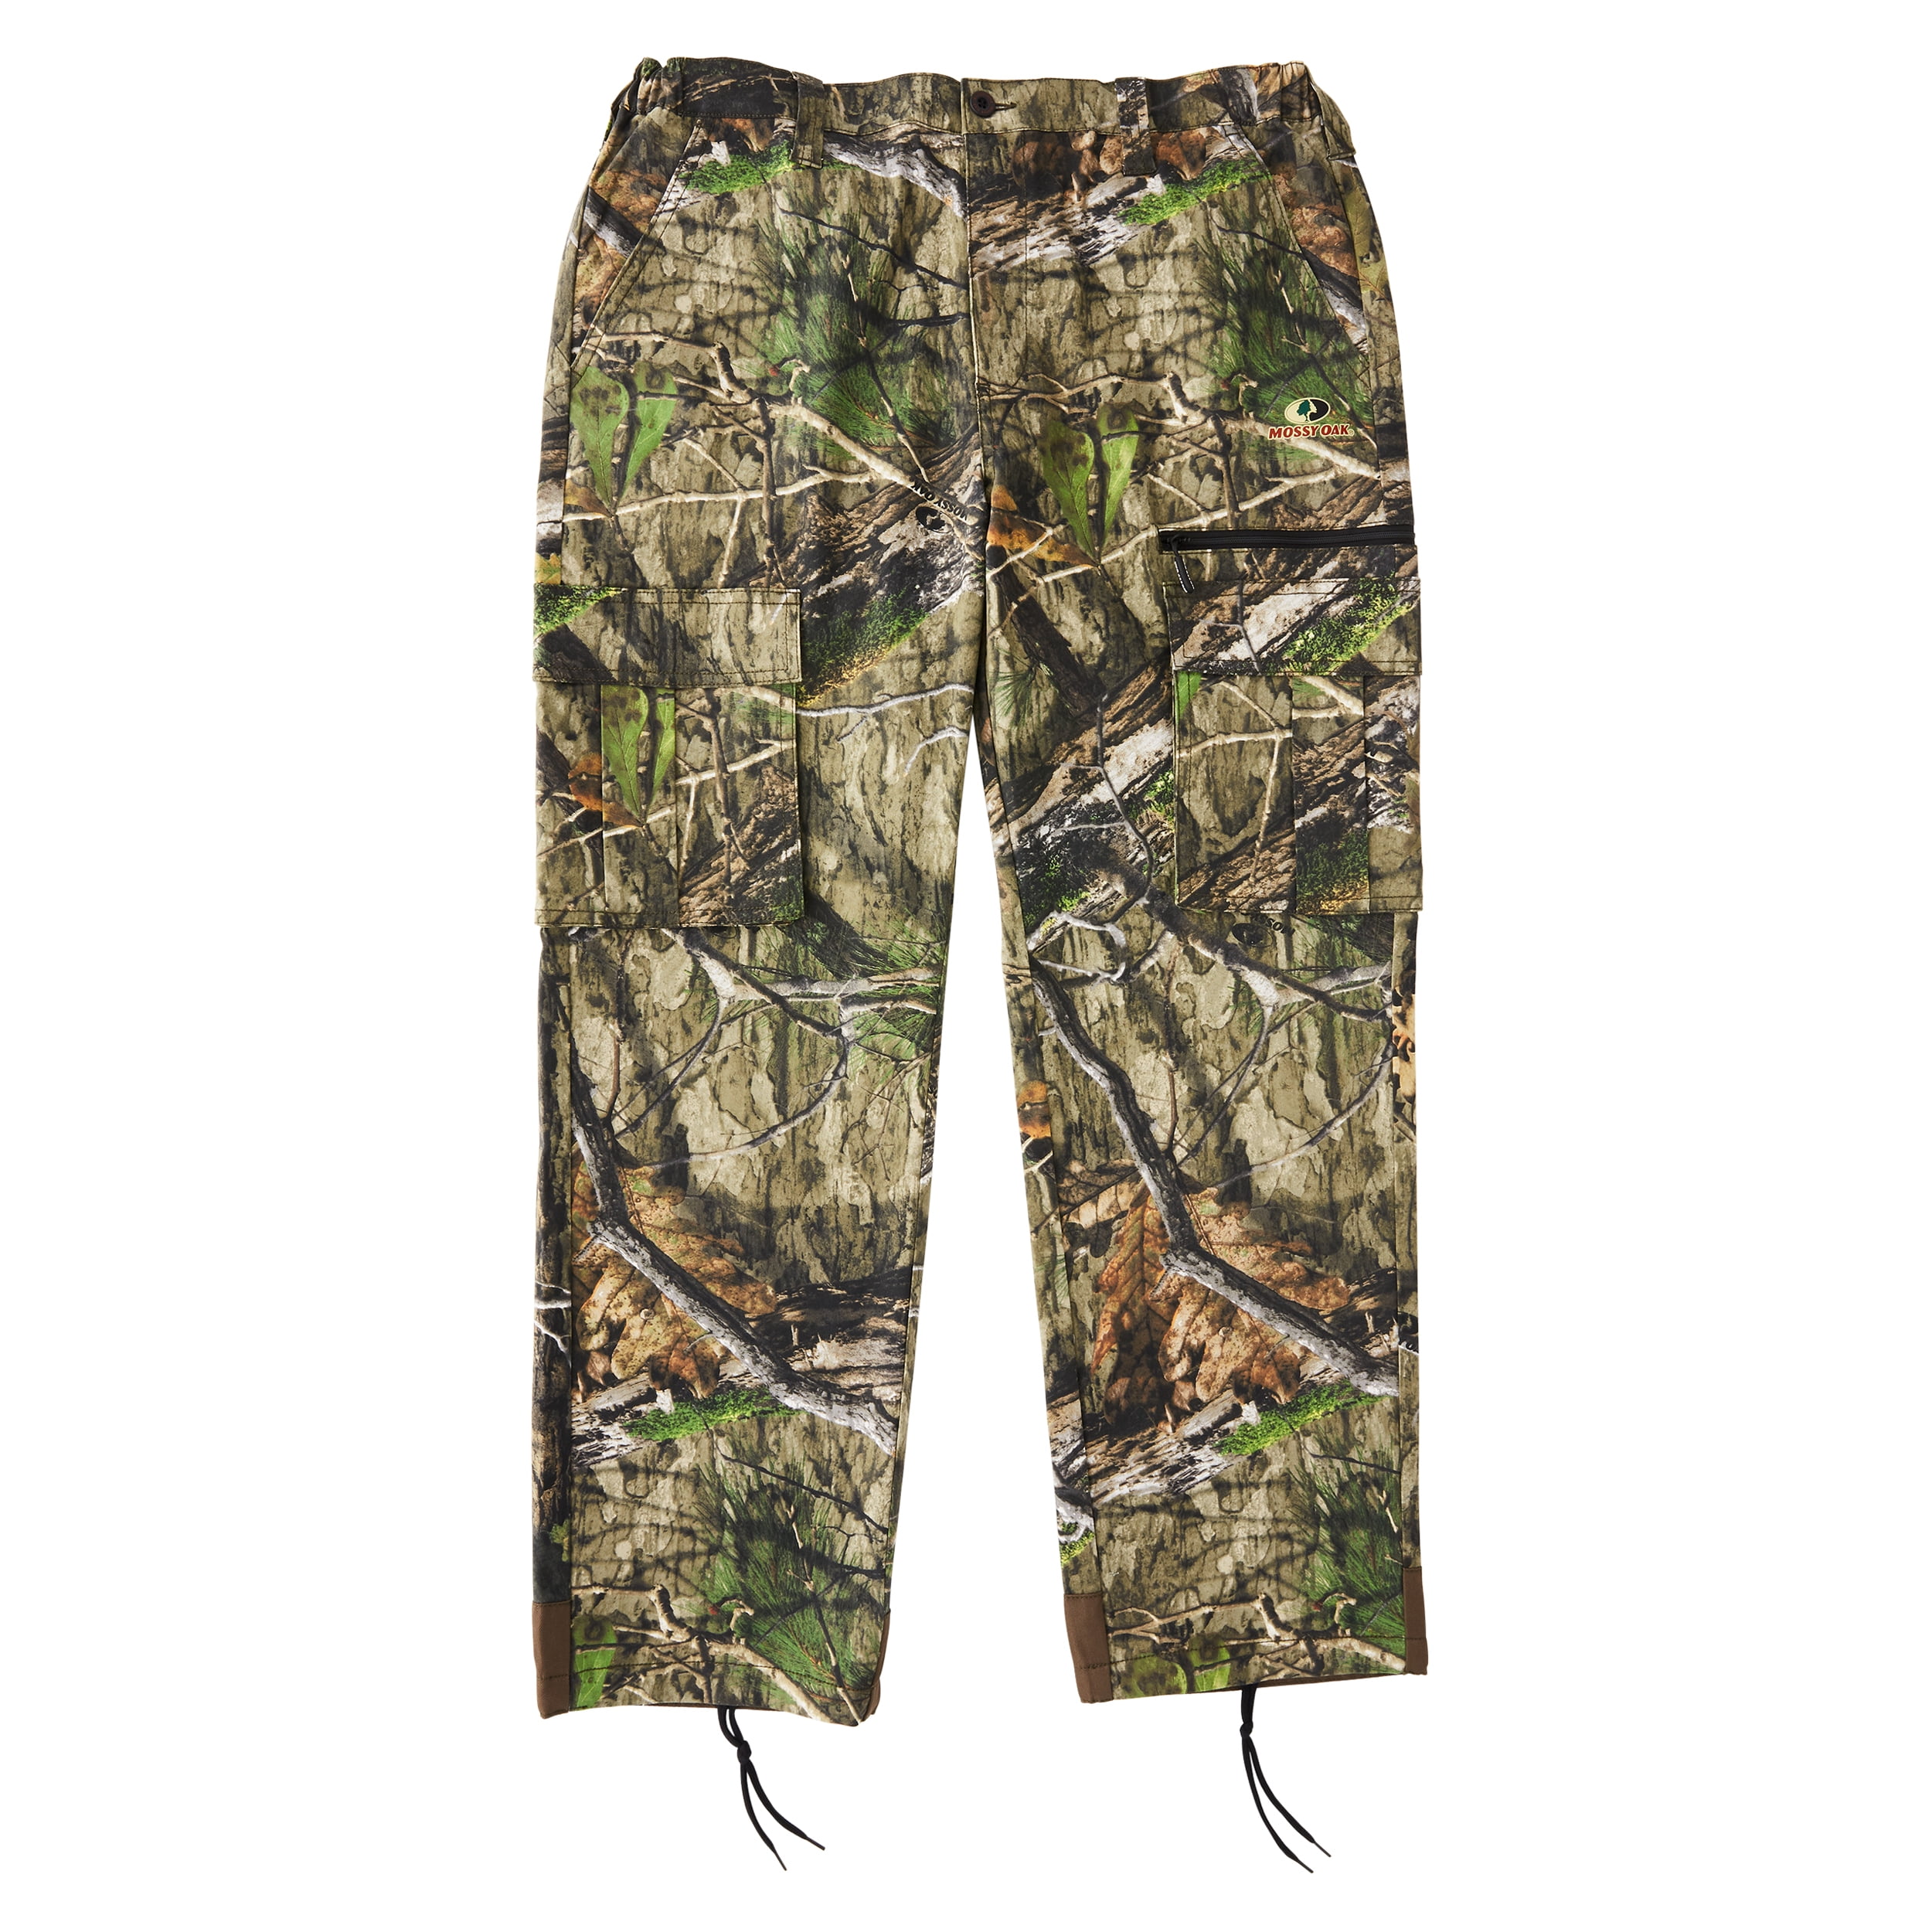 Youth 6 Pocket Cargo Pants in Mossy Oak Camo Print – Mooselander Apparel